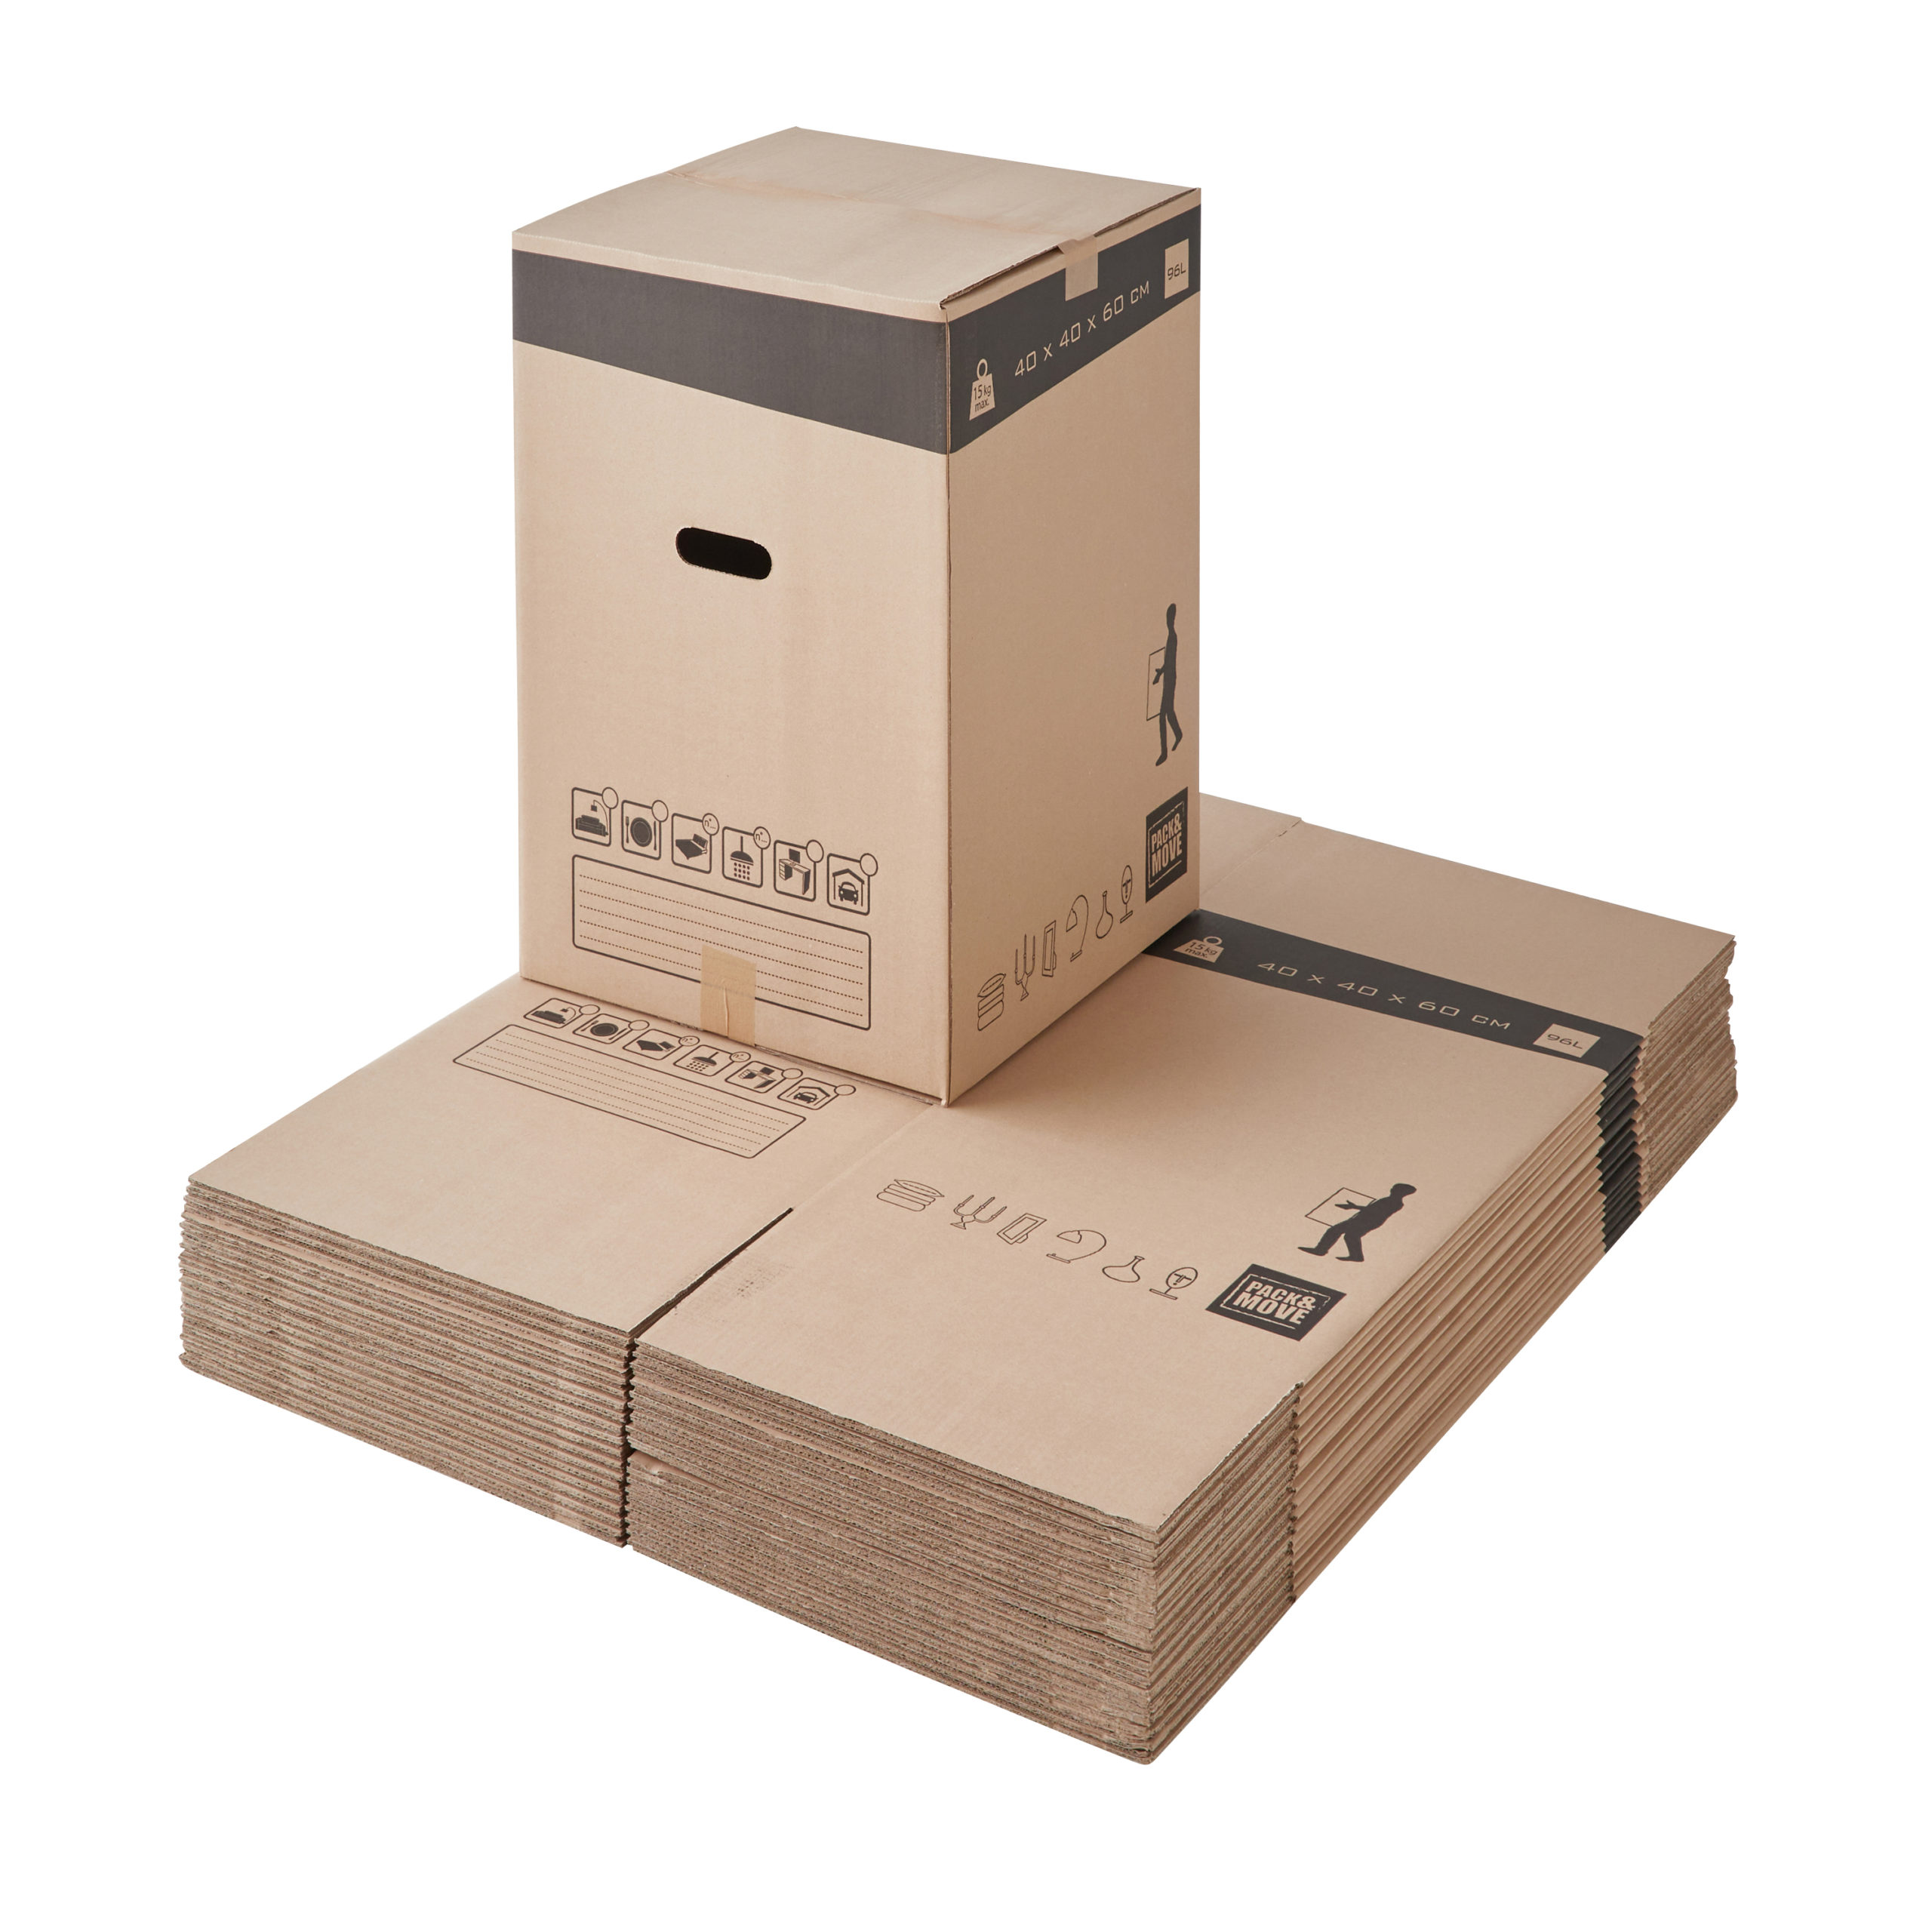 Caisse carton déménagement - lot de 30 grands cartons